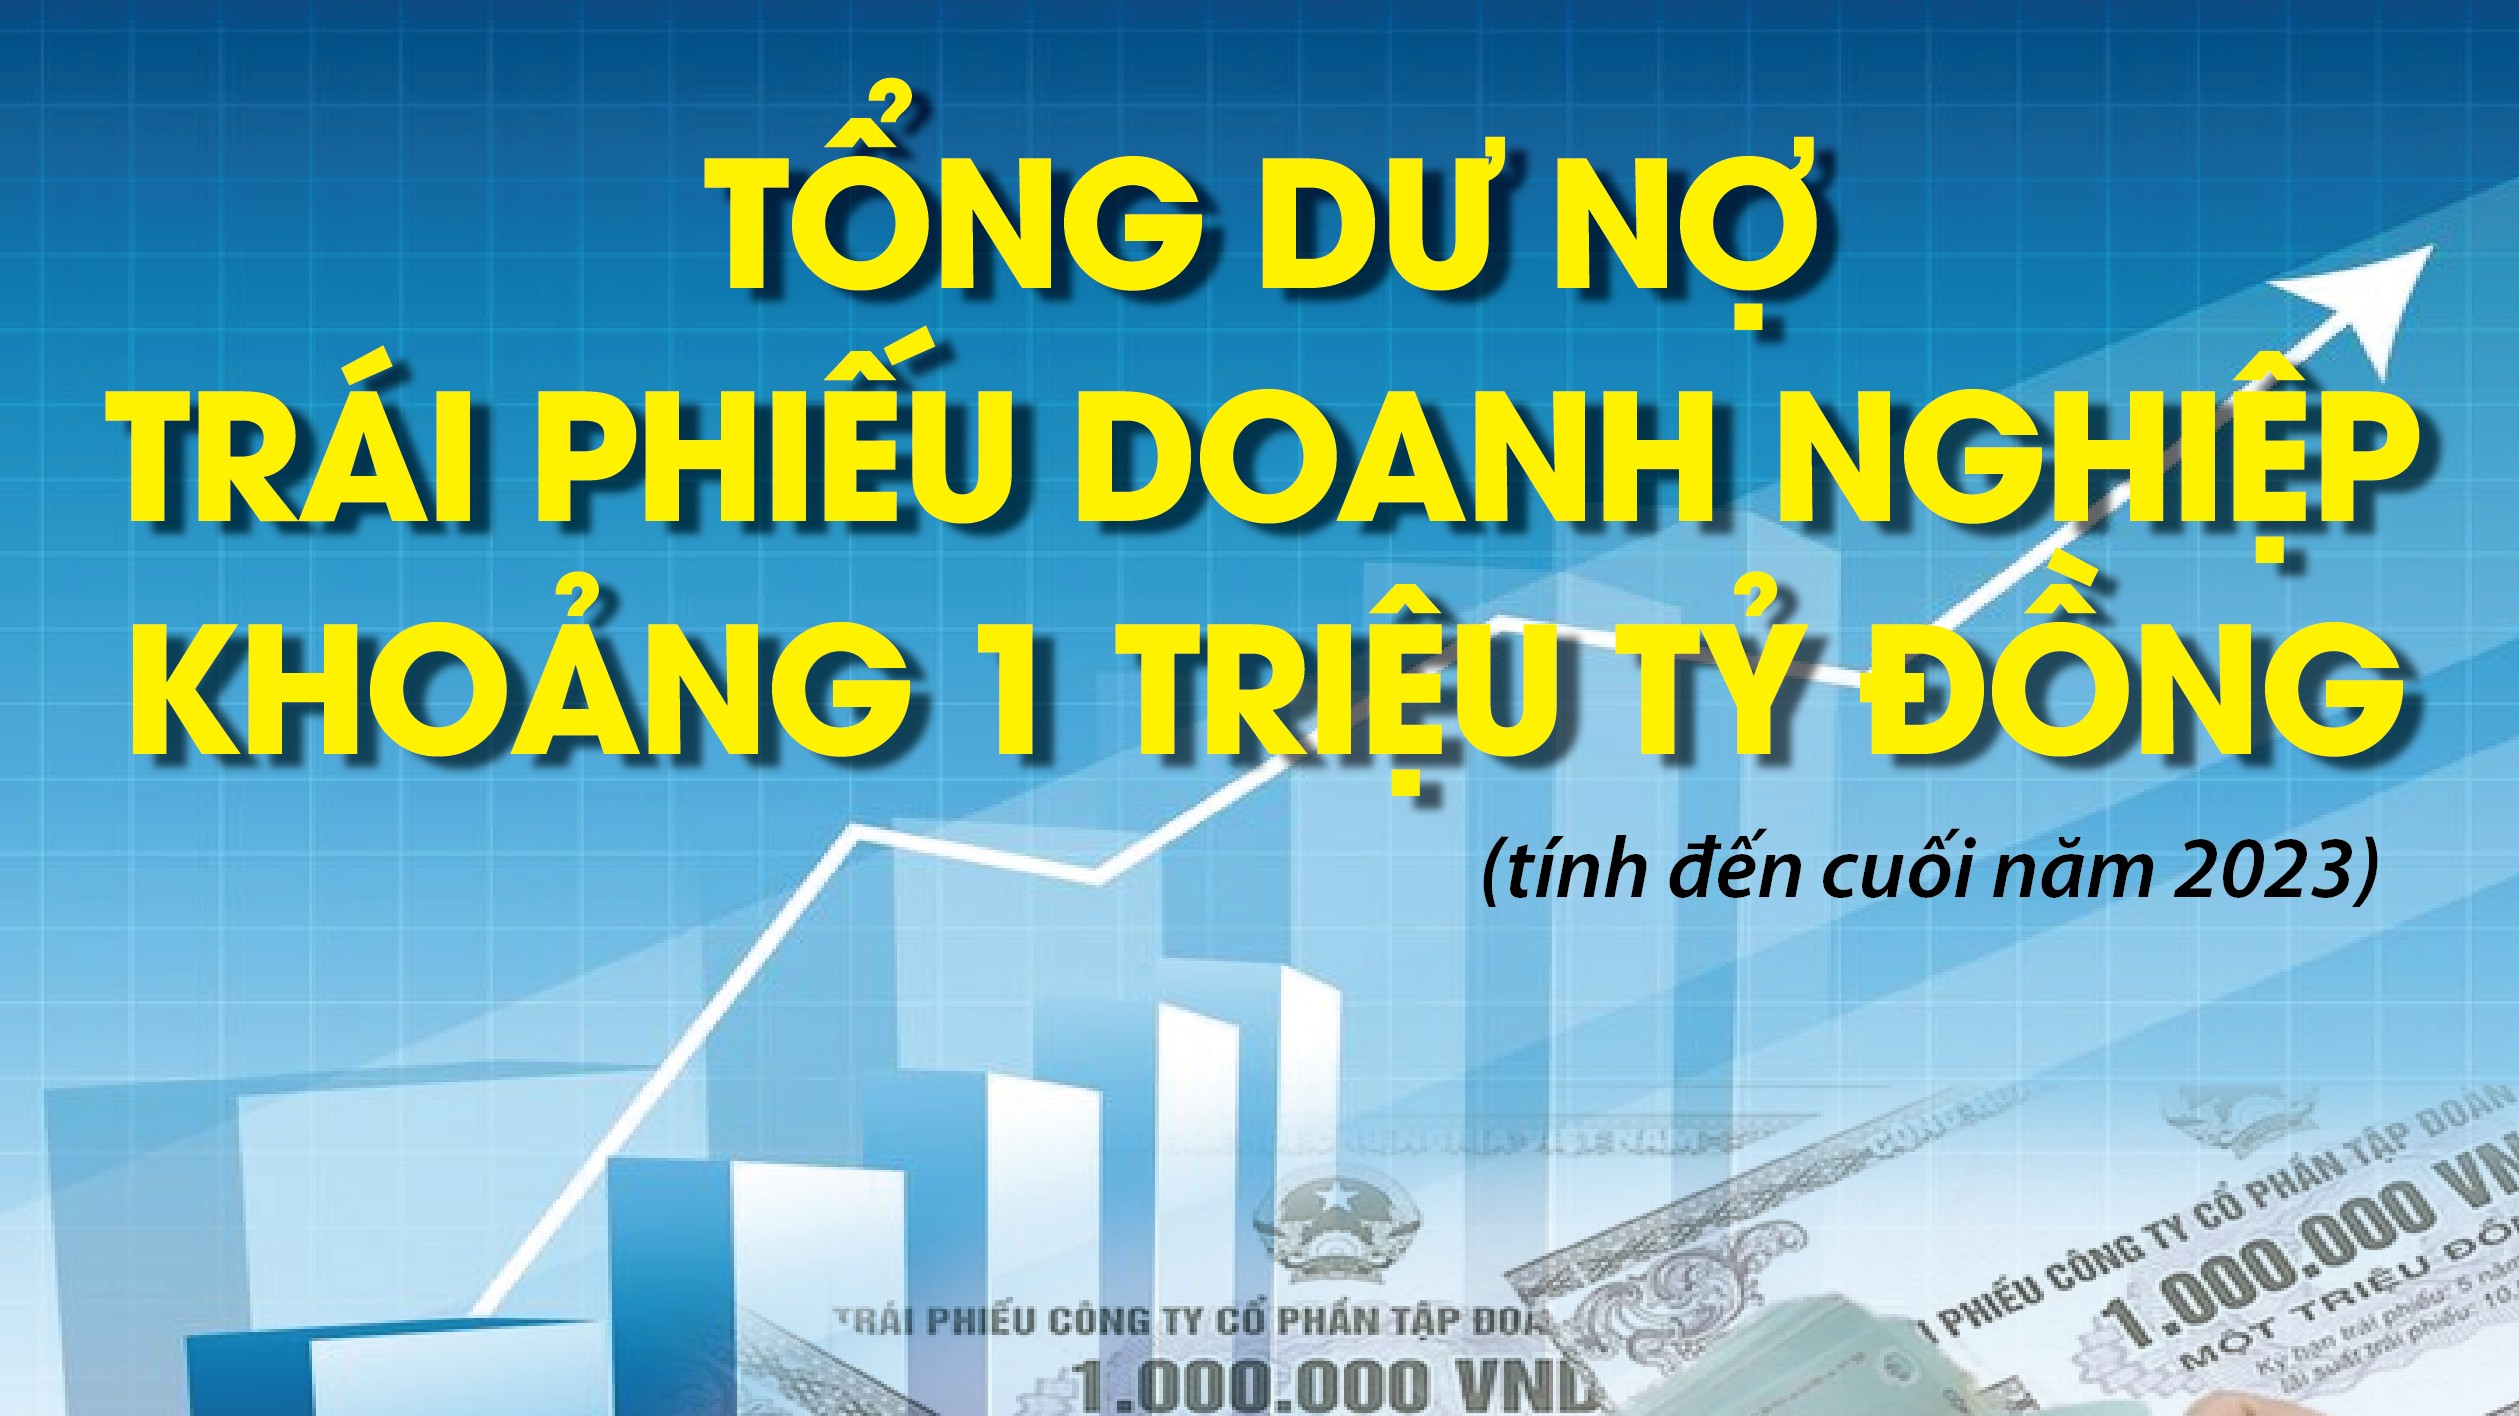 infographics tong du no trai phieu doanh nghiep vao khoang 1 trieu ty dong